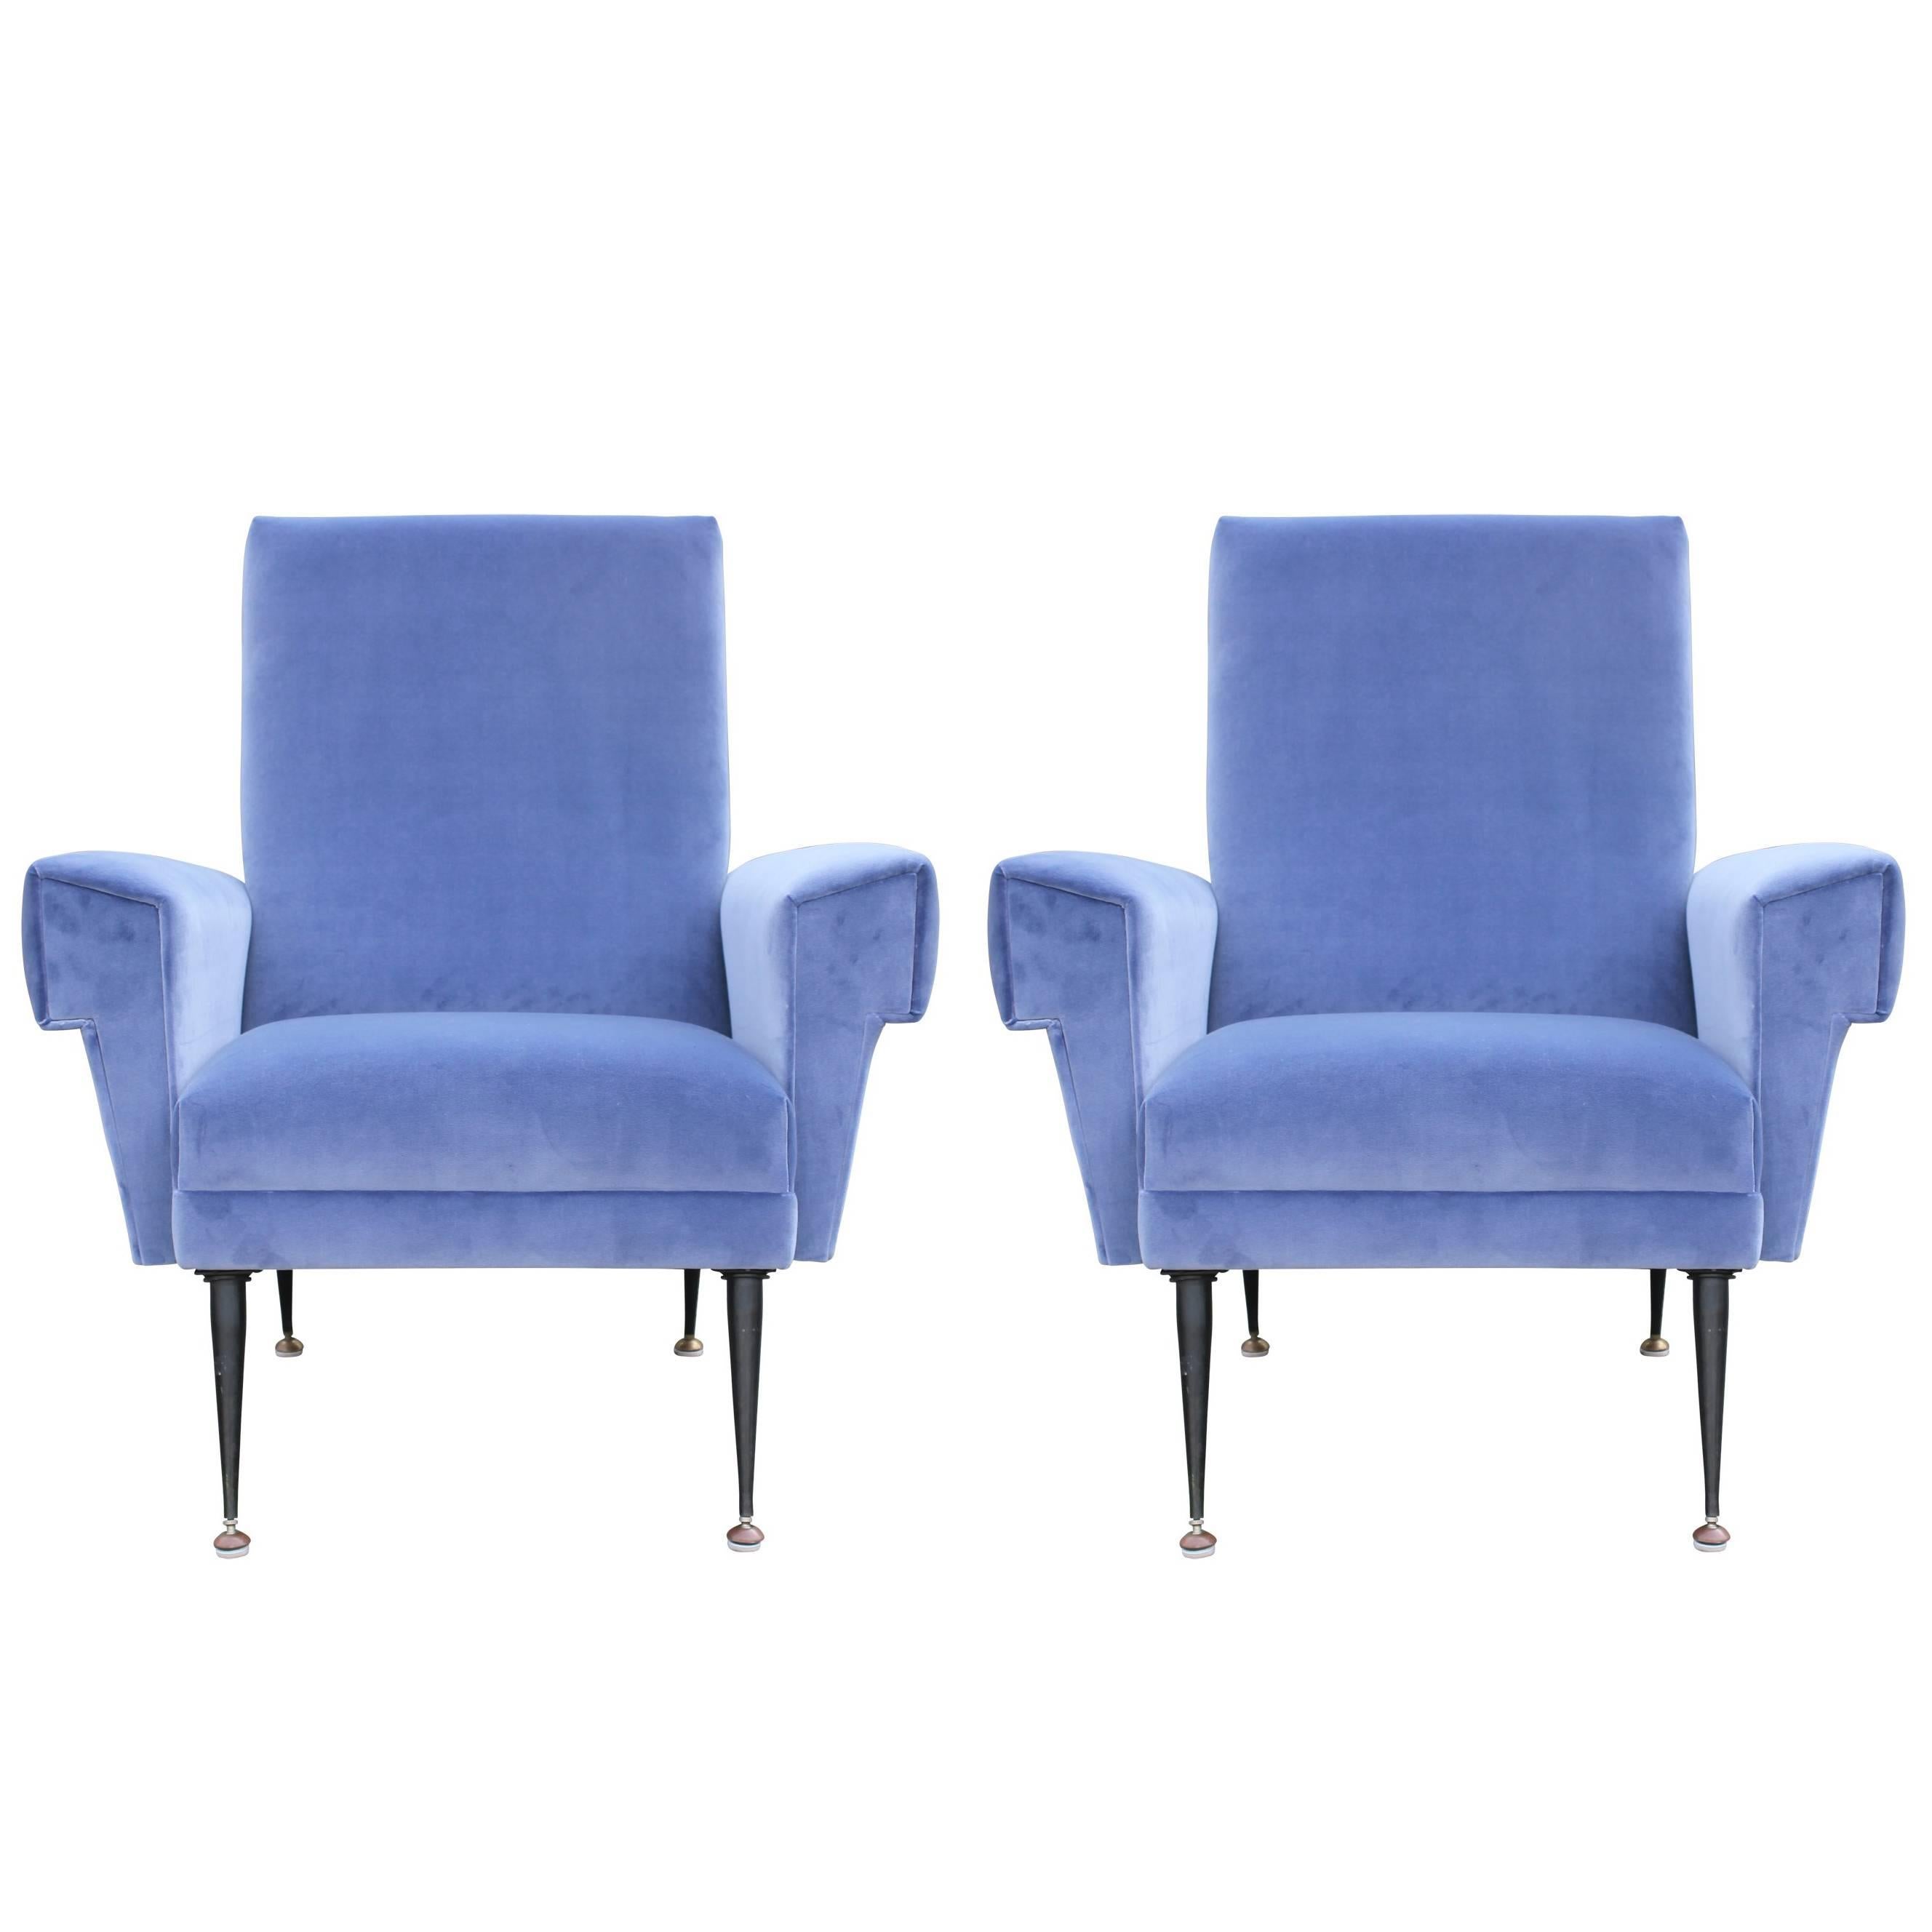 Pair of Modern Arflex Style Italian Lounge Chairs in Blue Kravet Velvet